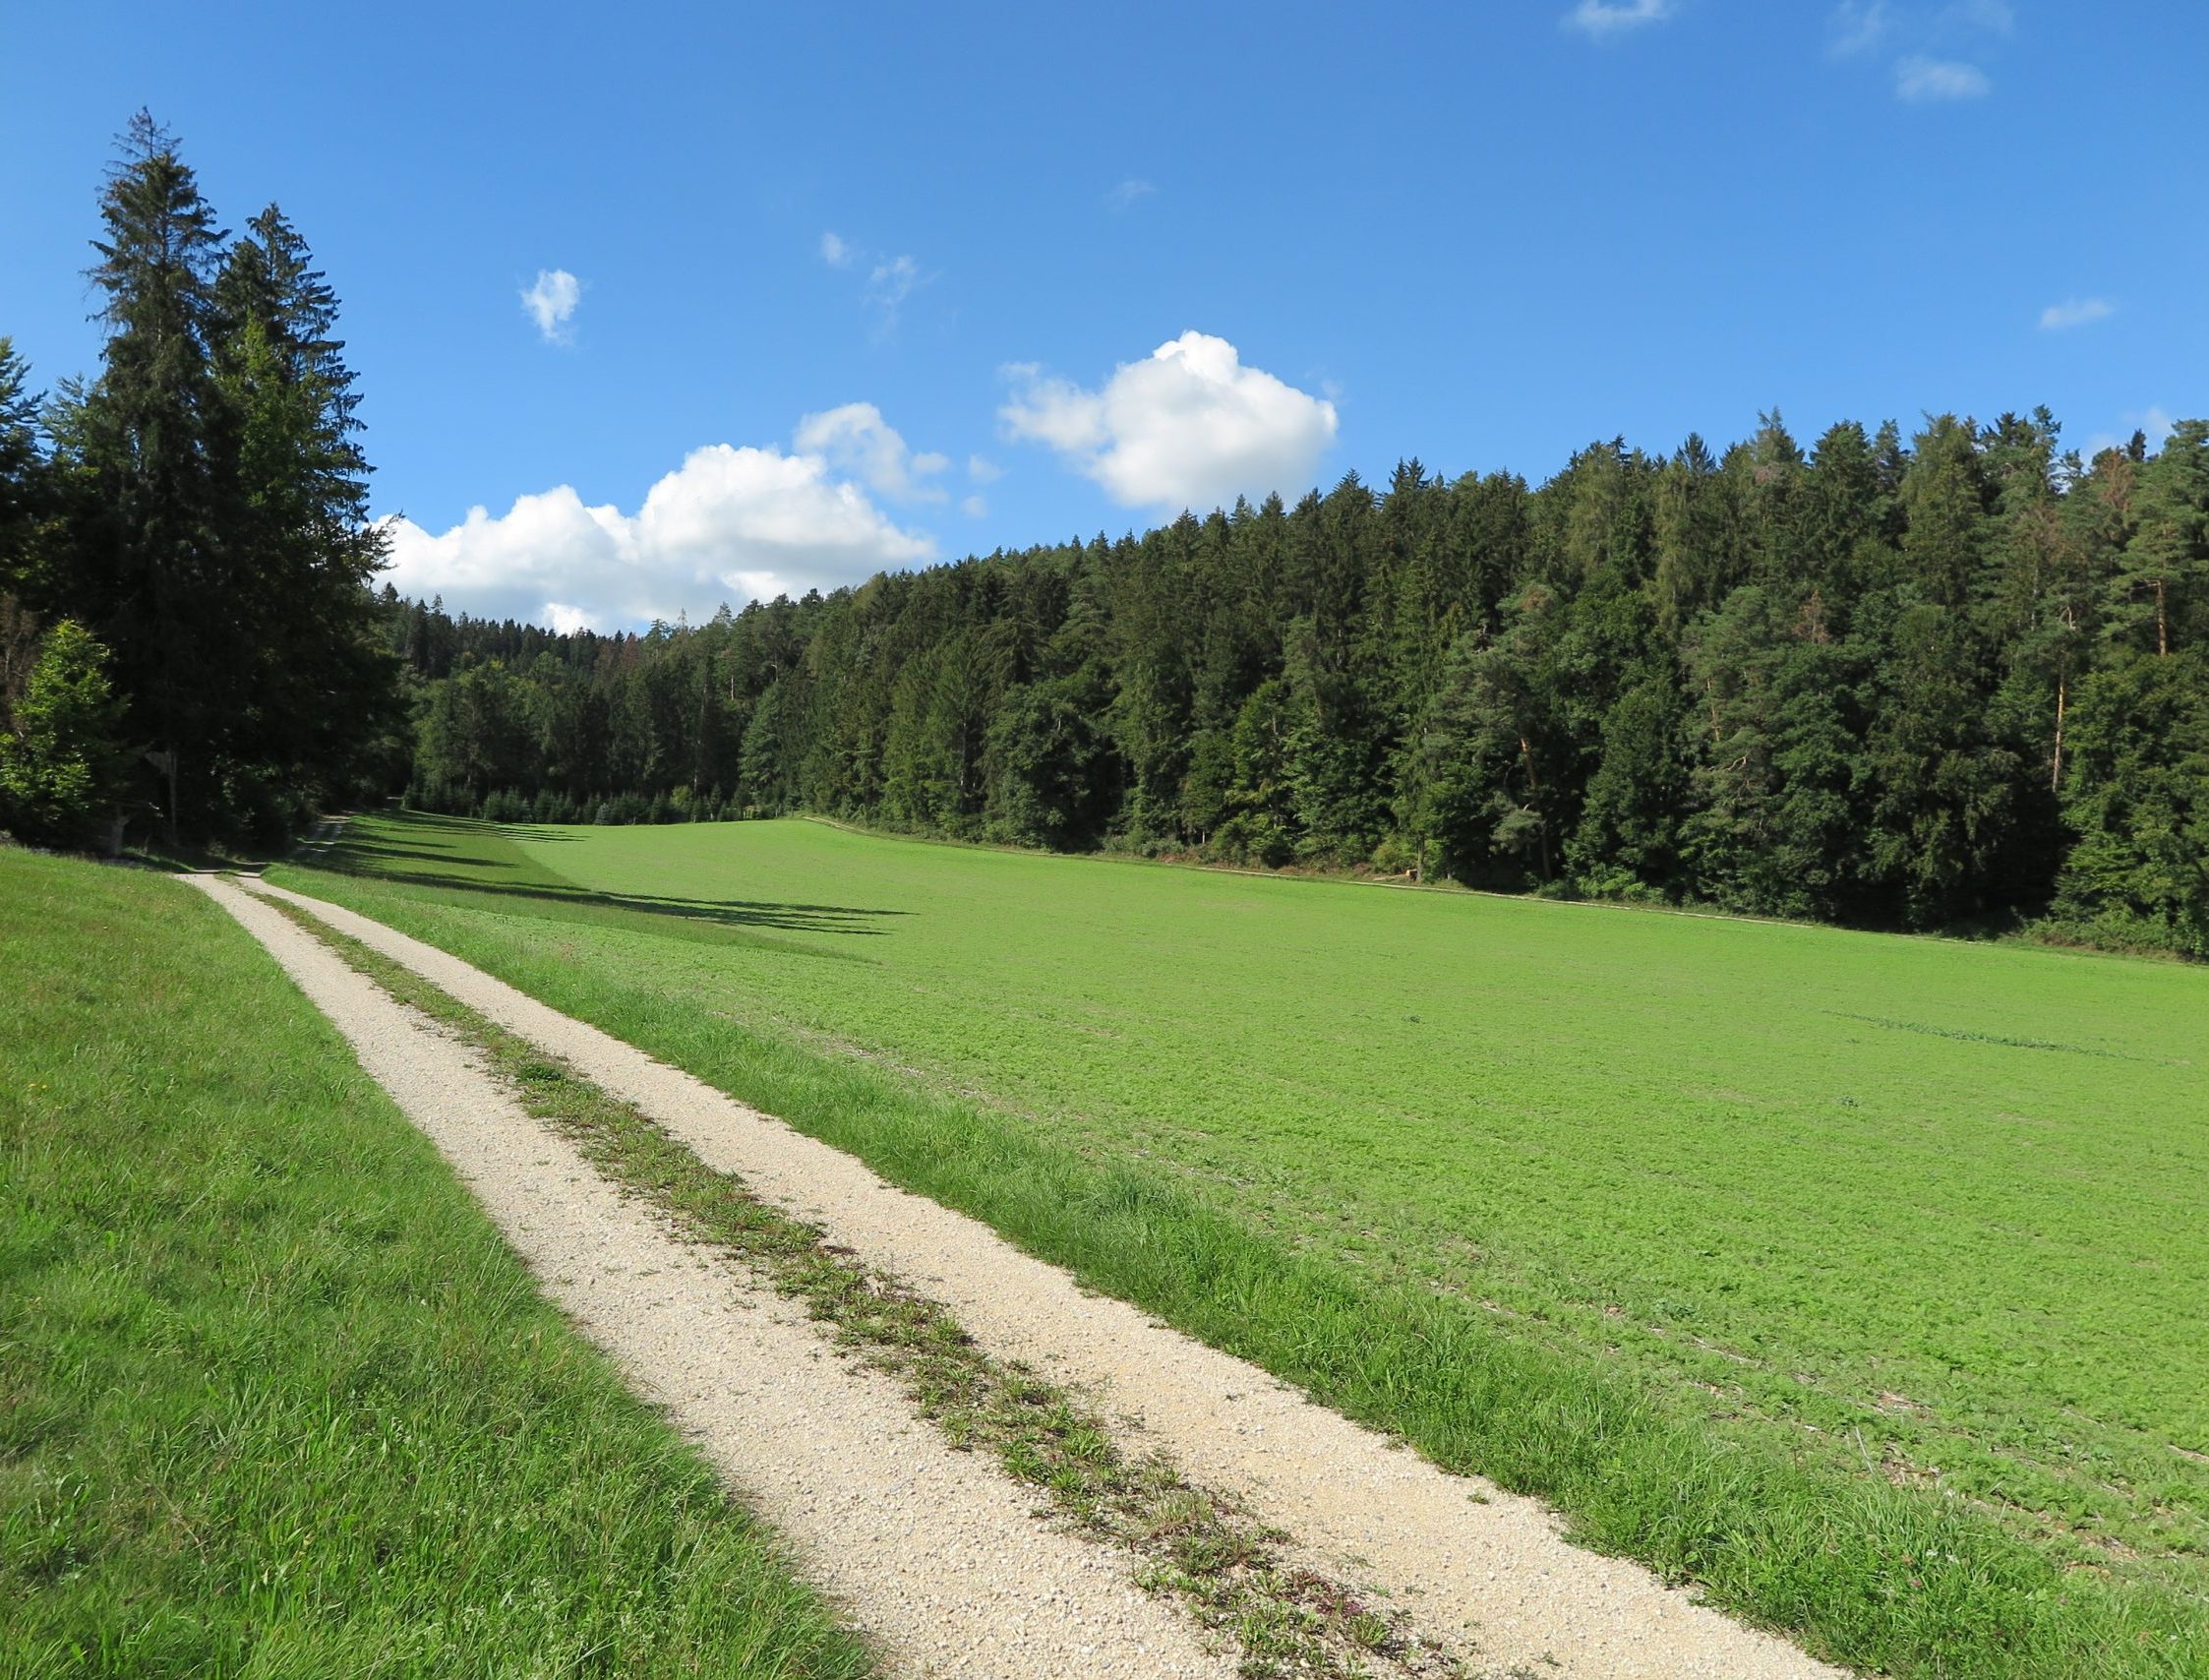 Haberstal in der Gemeinde Stadel mit Feld und Feldweg sowie Mischwald